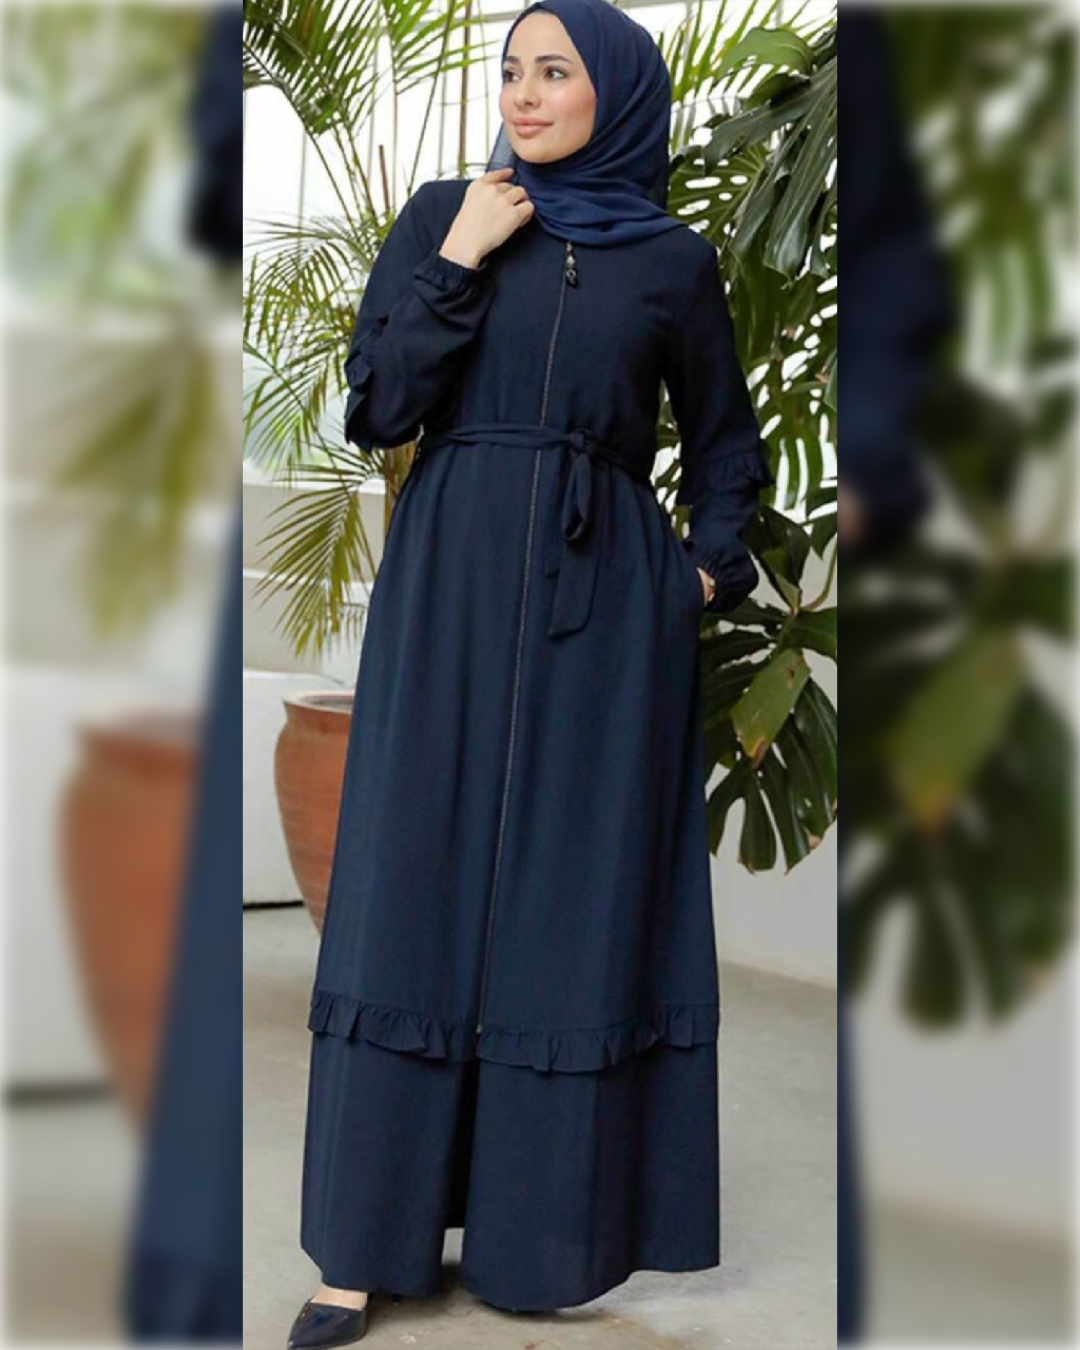 Fatimah Casual Belted Abaya Dress for Summer in Navy Shade   عباءة فاطمة العملية الصيفية  باللون الكحلي الجميل و بحزام للخصر